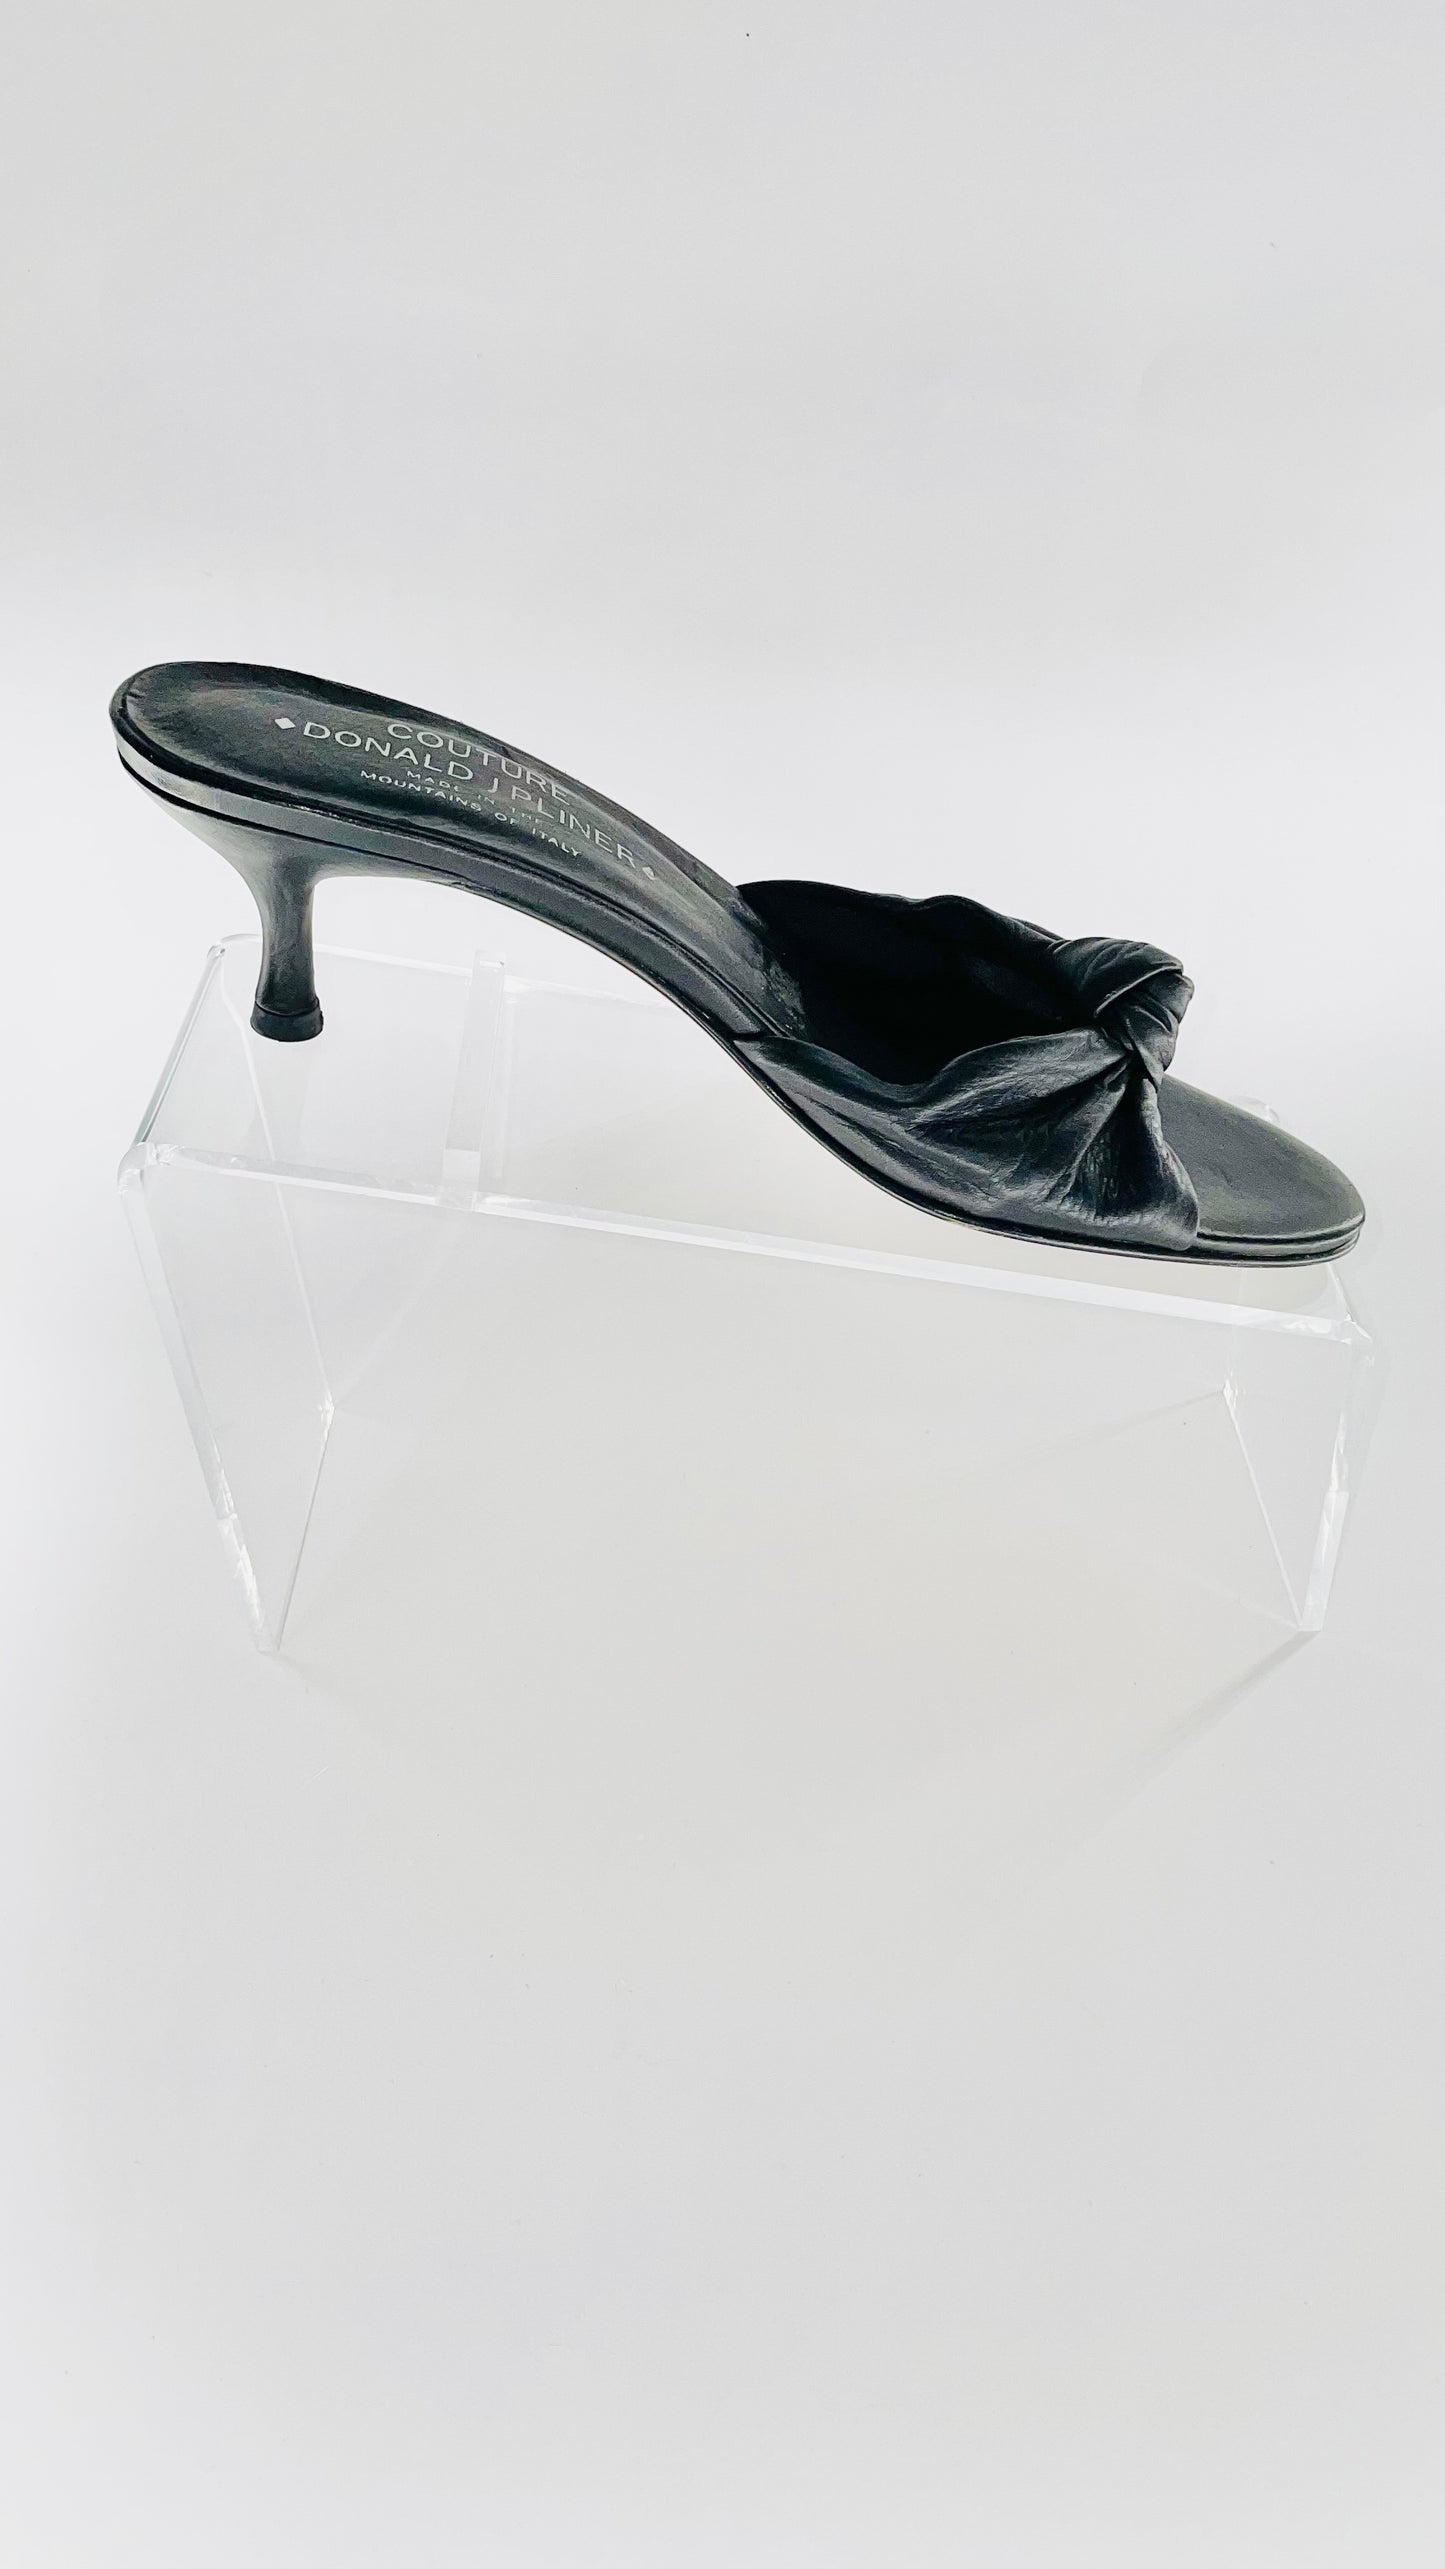 Vintage black Donald J. Pliner leather kitten heels - Size 7.5